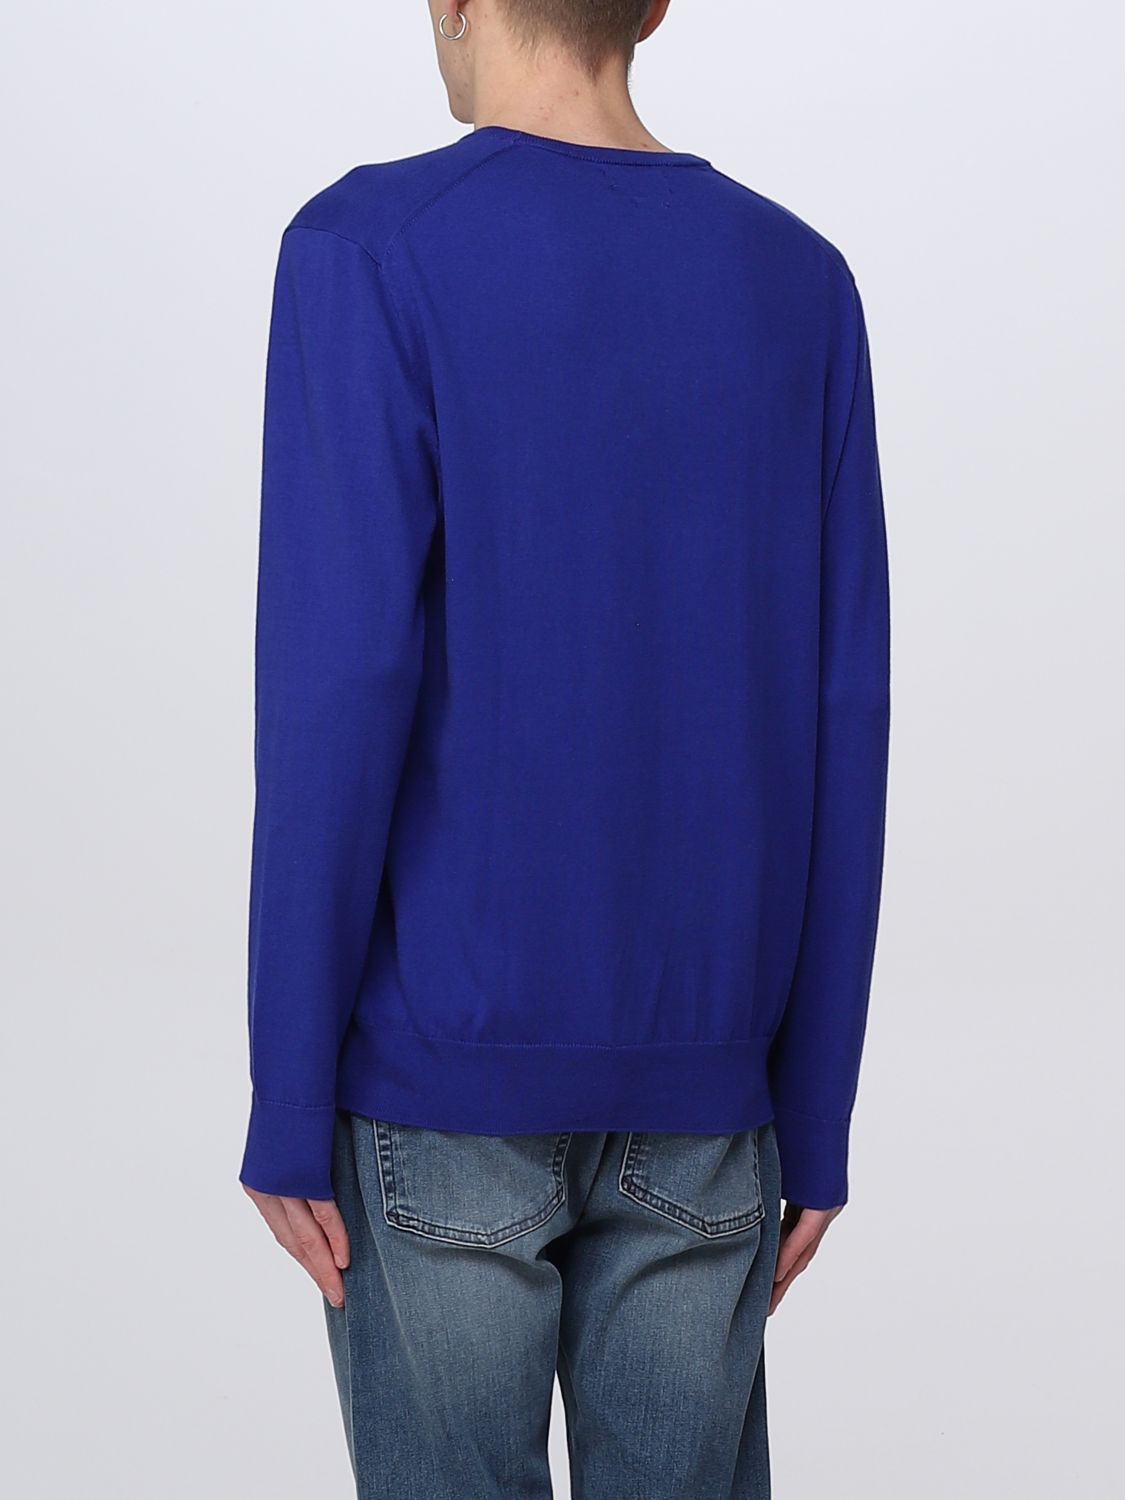 POLO RALPH LAUREN: sweater for man - Blue 1 | Polo Ralph Lauren sweater ...